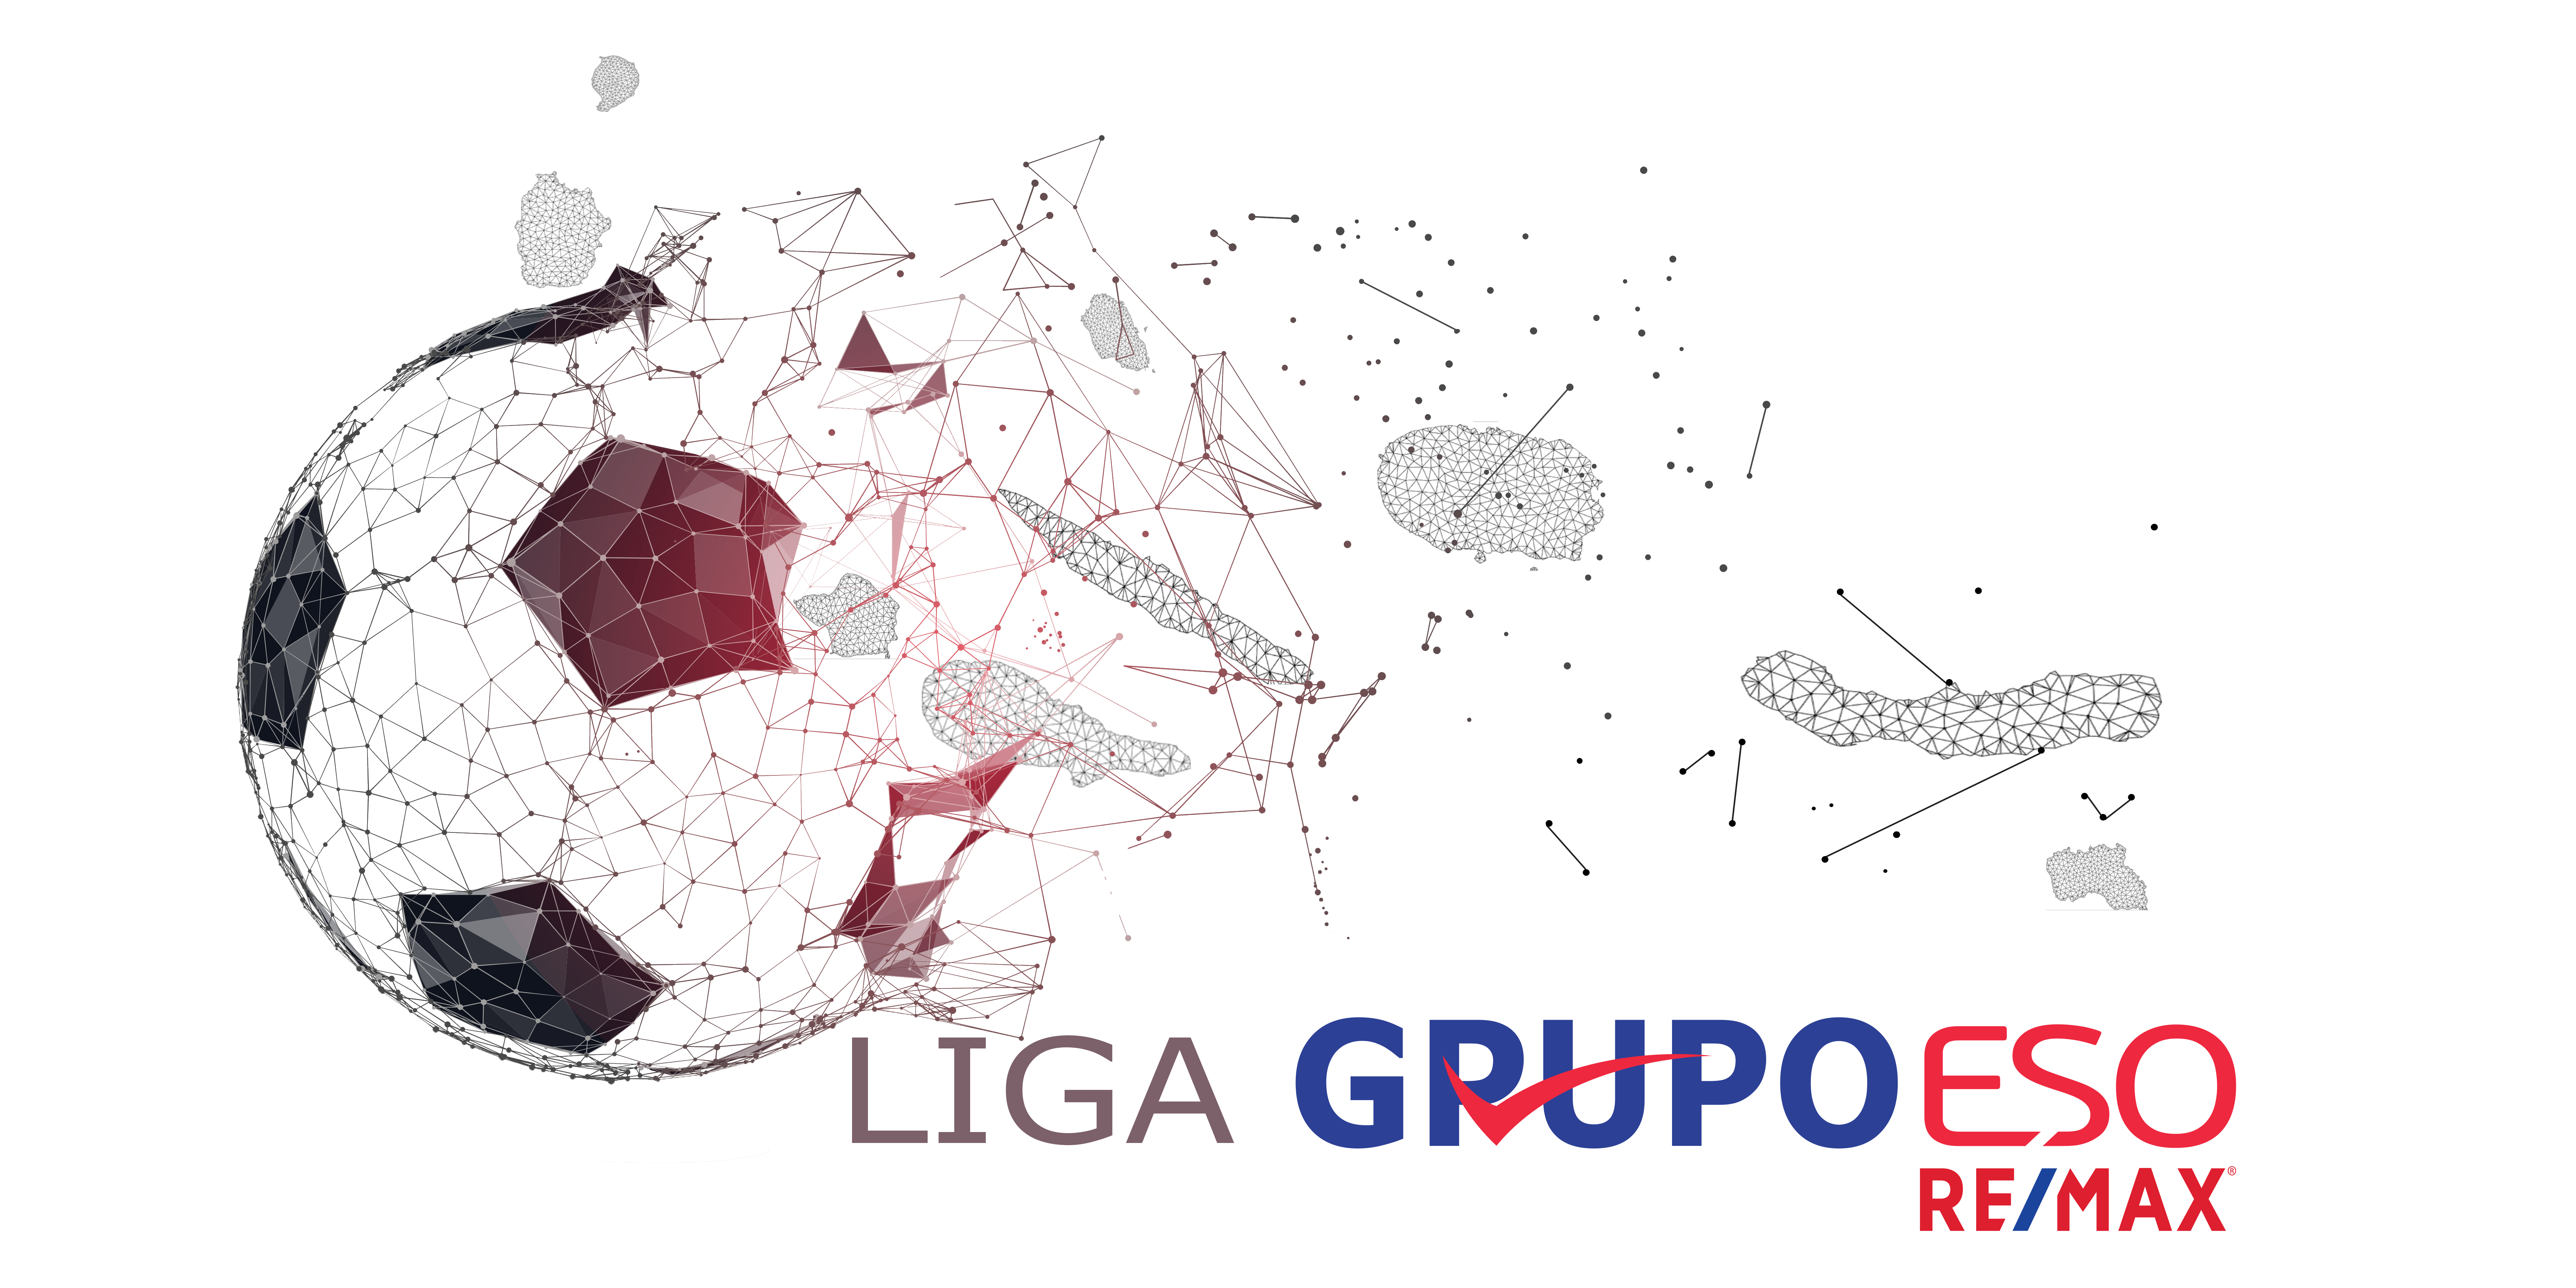 Liga Grupo ESO RE/MAX - Futebol Seniores | 2ª Fase - 1ª Jornada - Grupo de Promoção e Despromoção